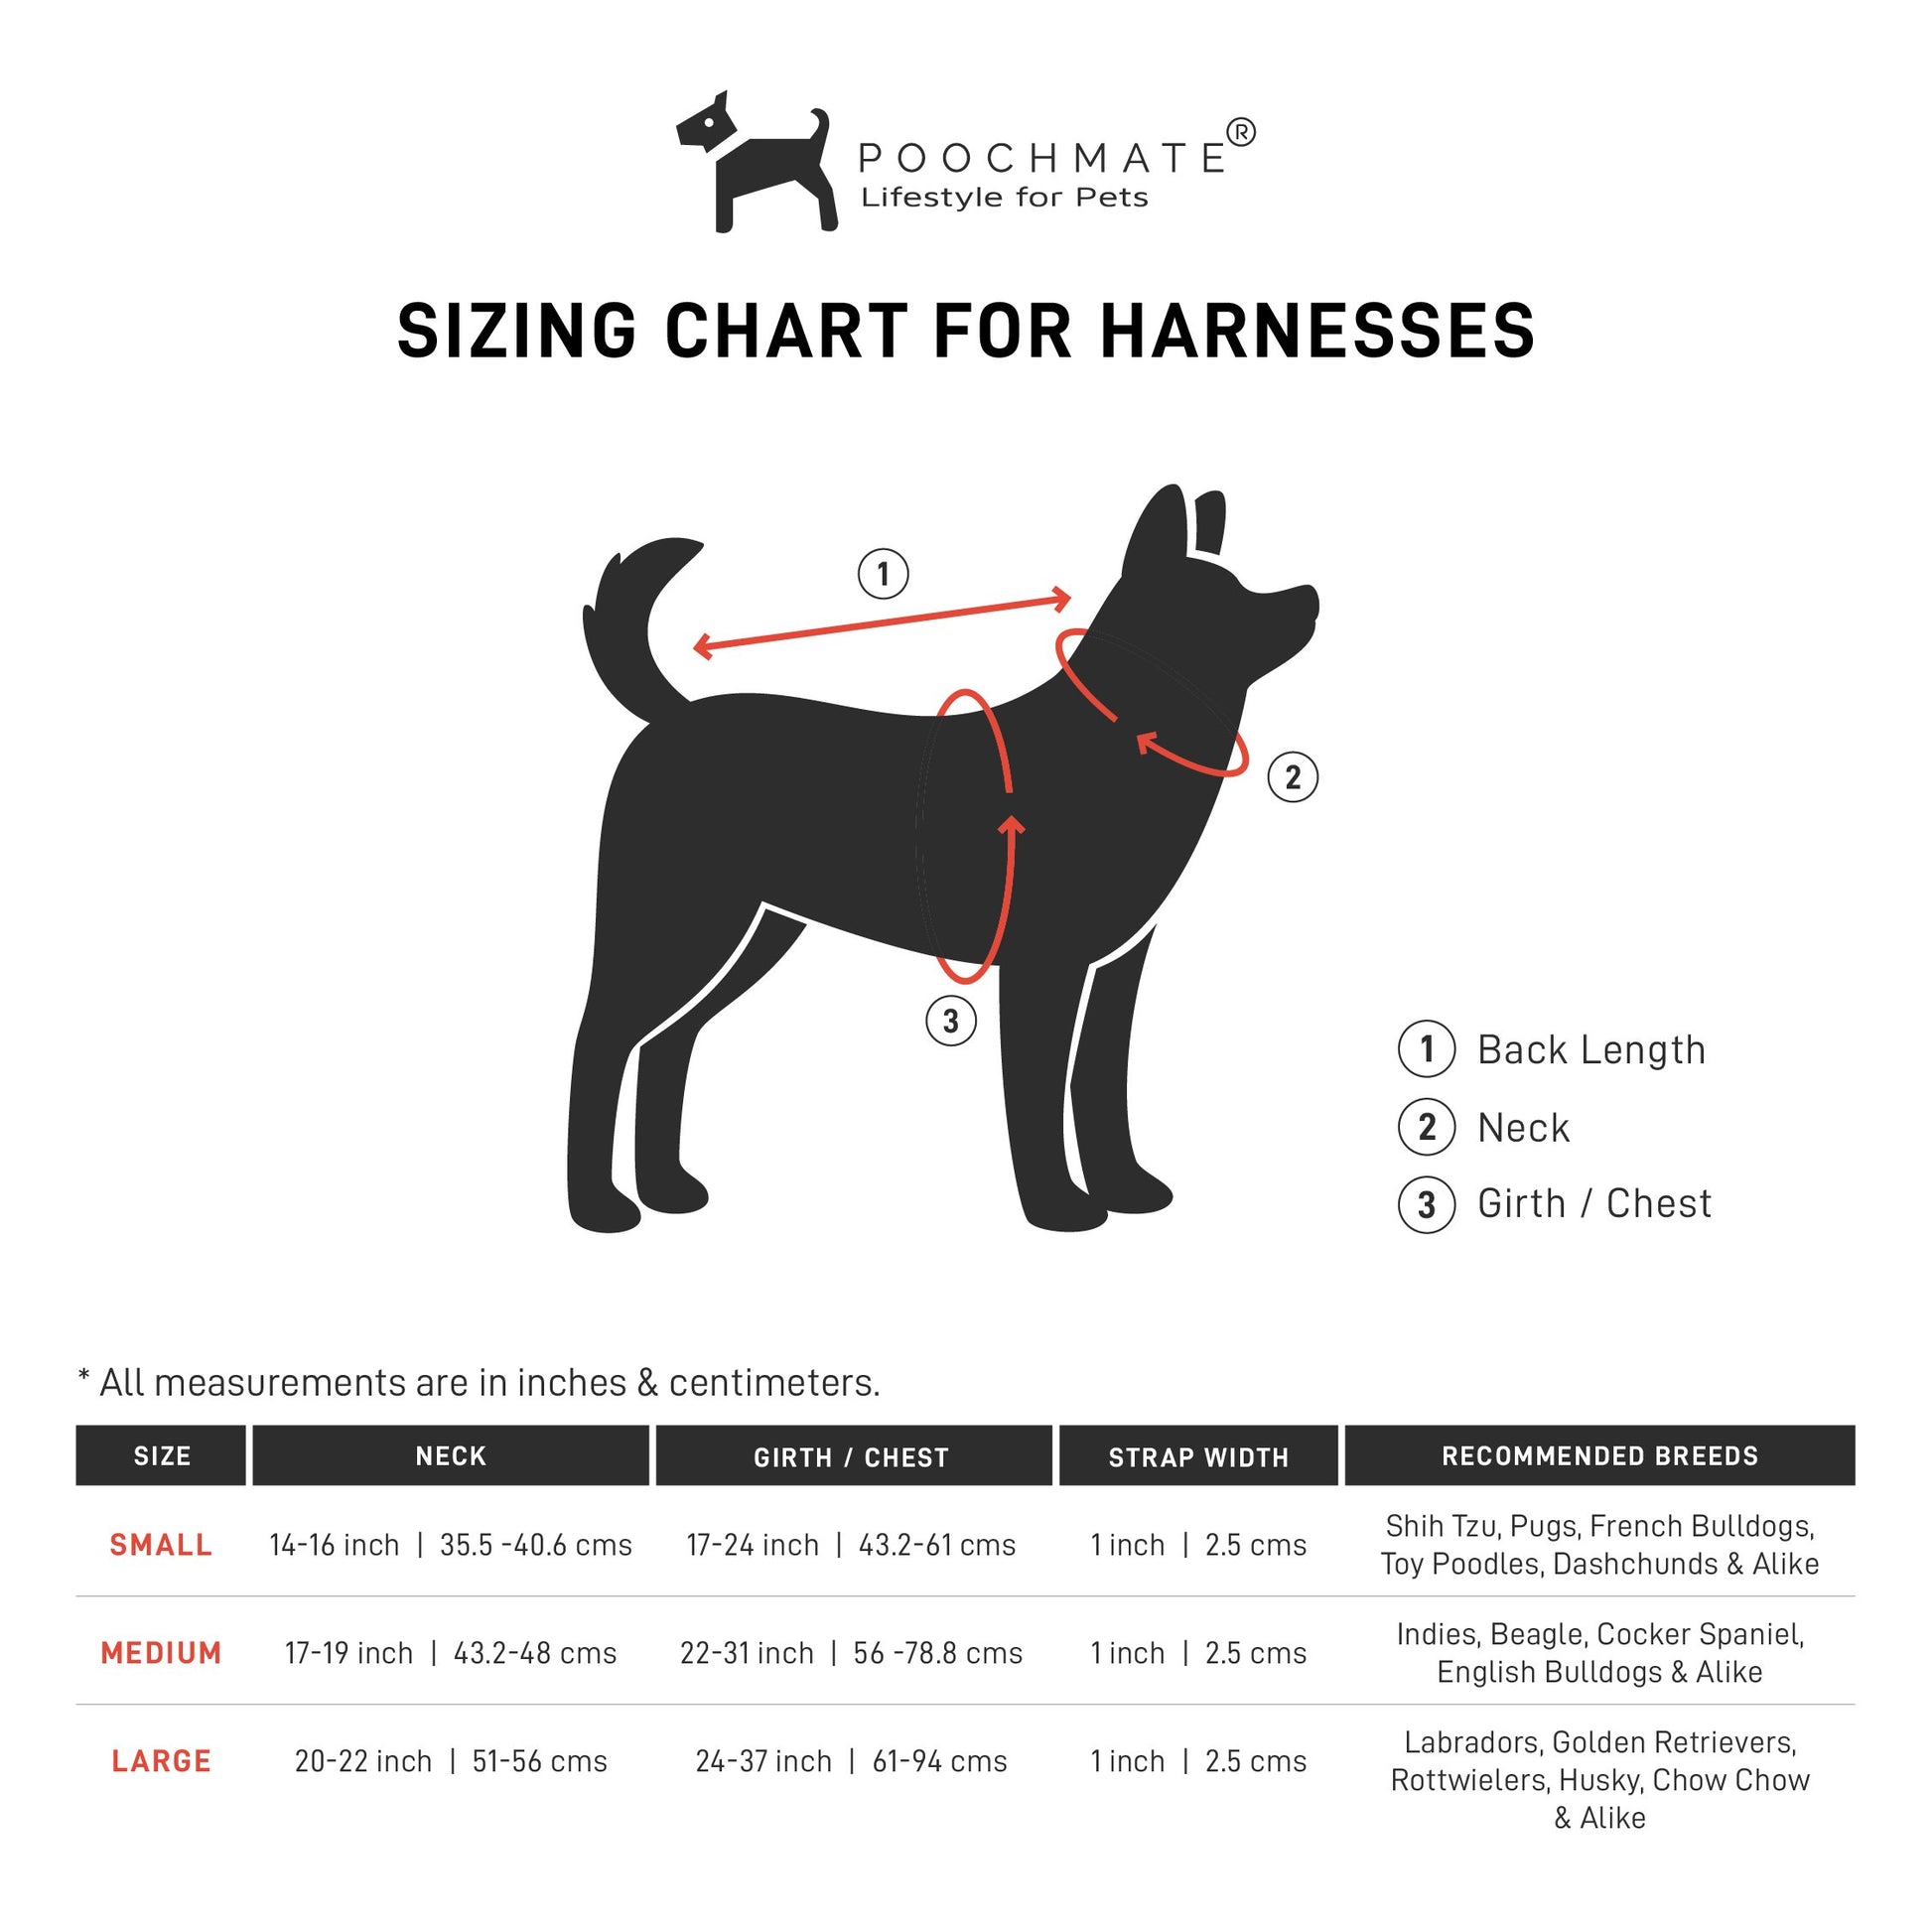 Adjustable dog harness online UAE | PoochMate UAE